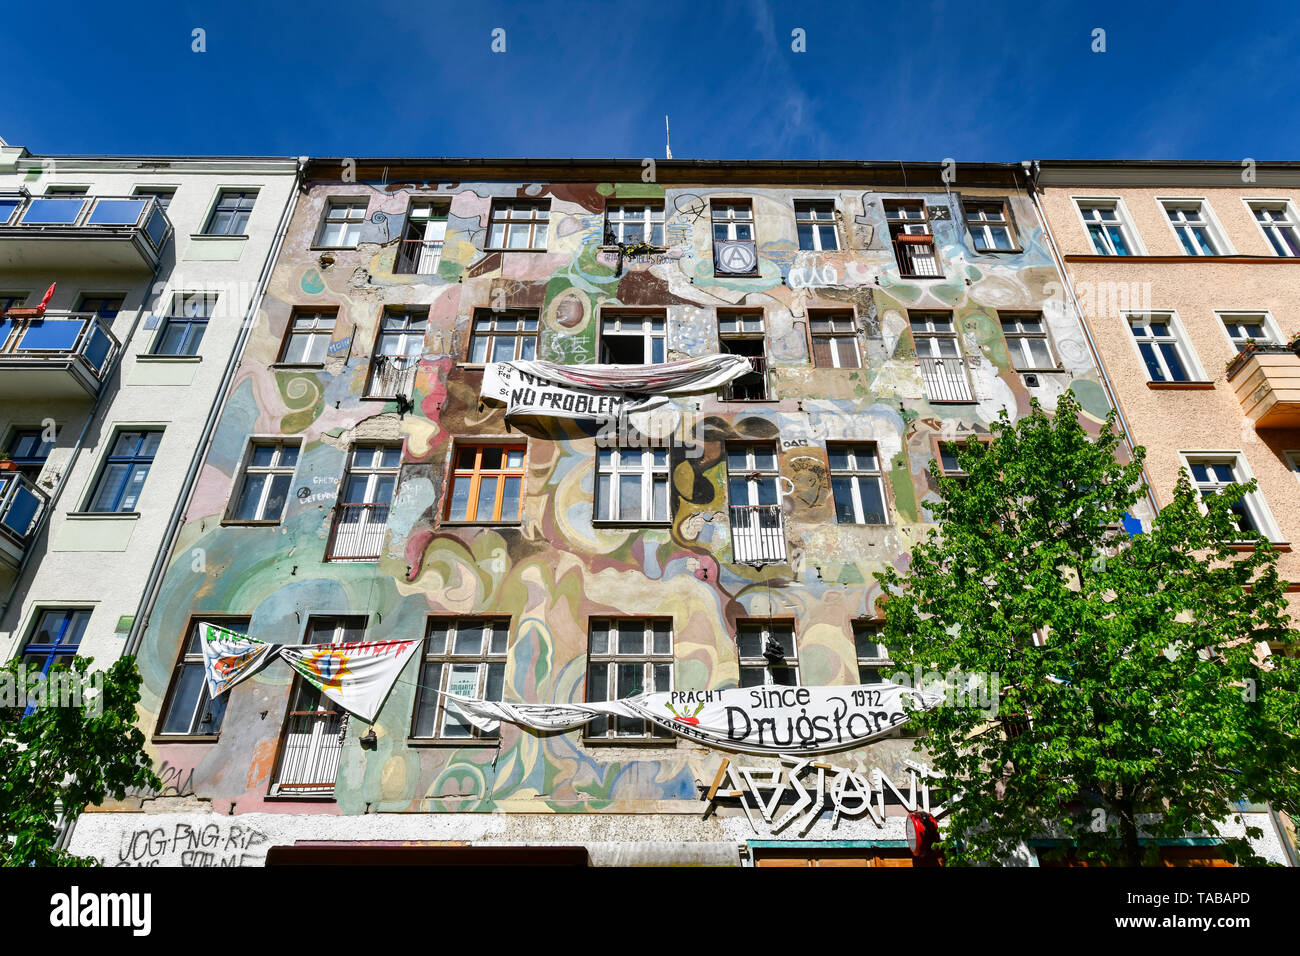 Casa occupata, Rigaer street 94, Friedrich di grove, Berlino, Germania, Besetztes Haus, Rigaer Straße 94, Friedrichshain, Deutschland Foto Stock